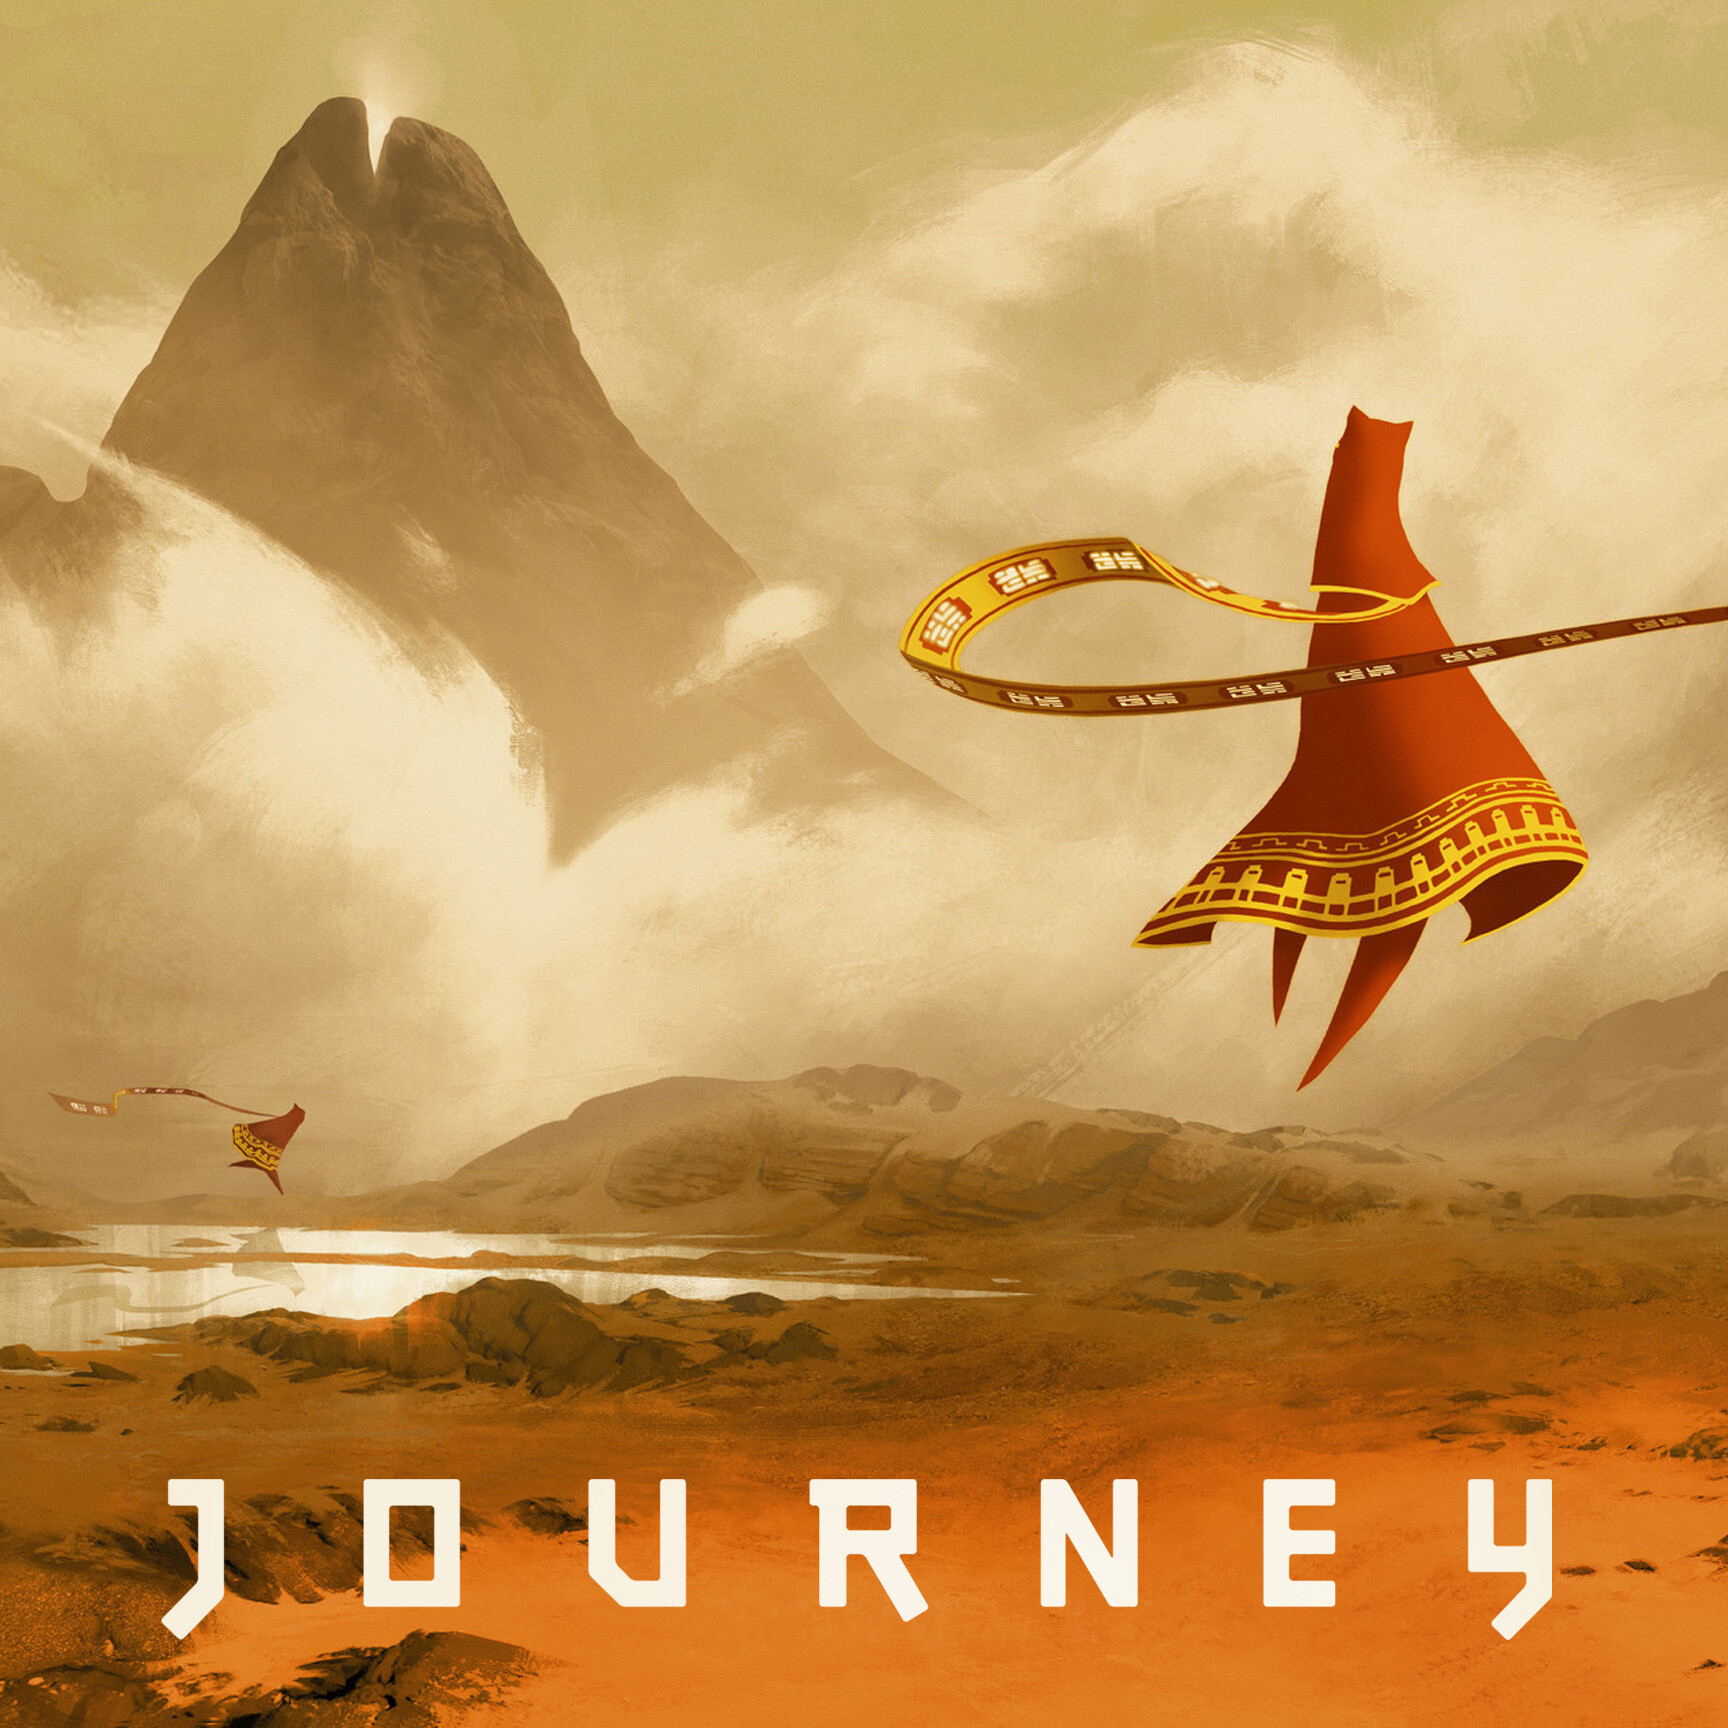 May journey. Journey (игра, 2012). Journey thatgamecompany. Путешествие игра Journey. Джорни путешествие игра.